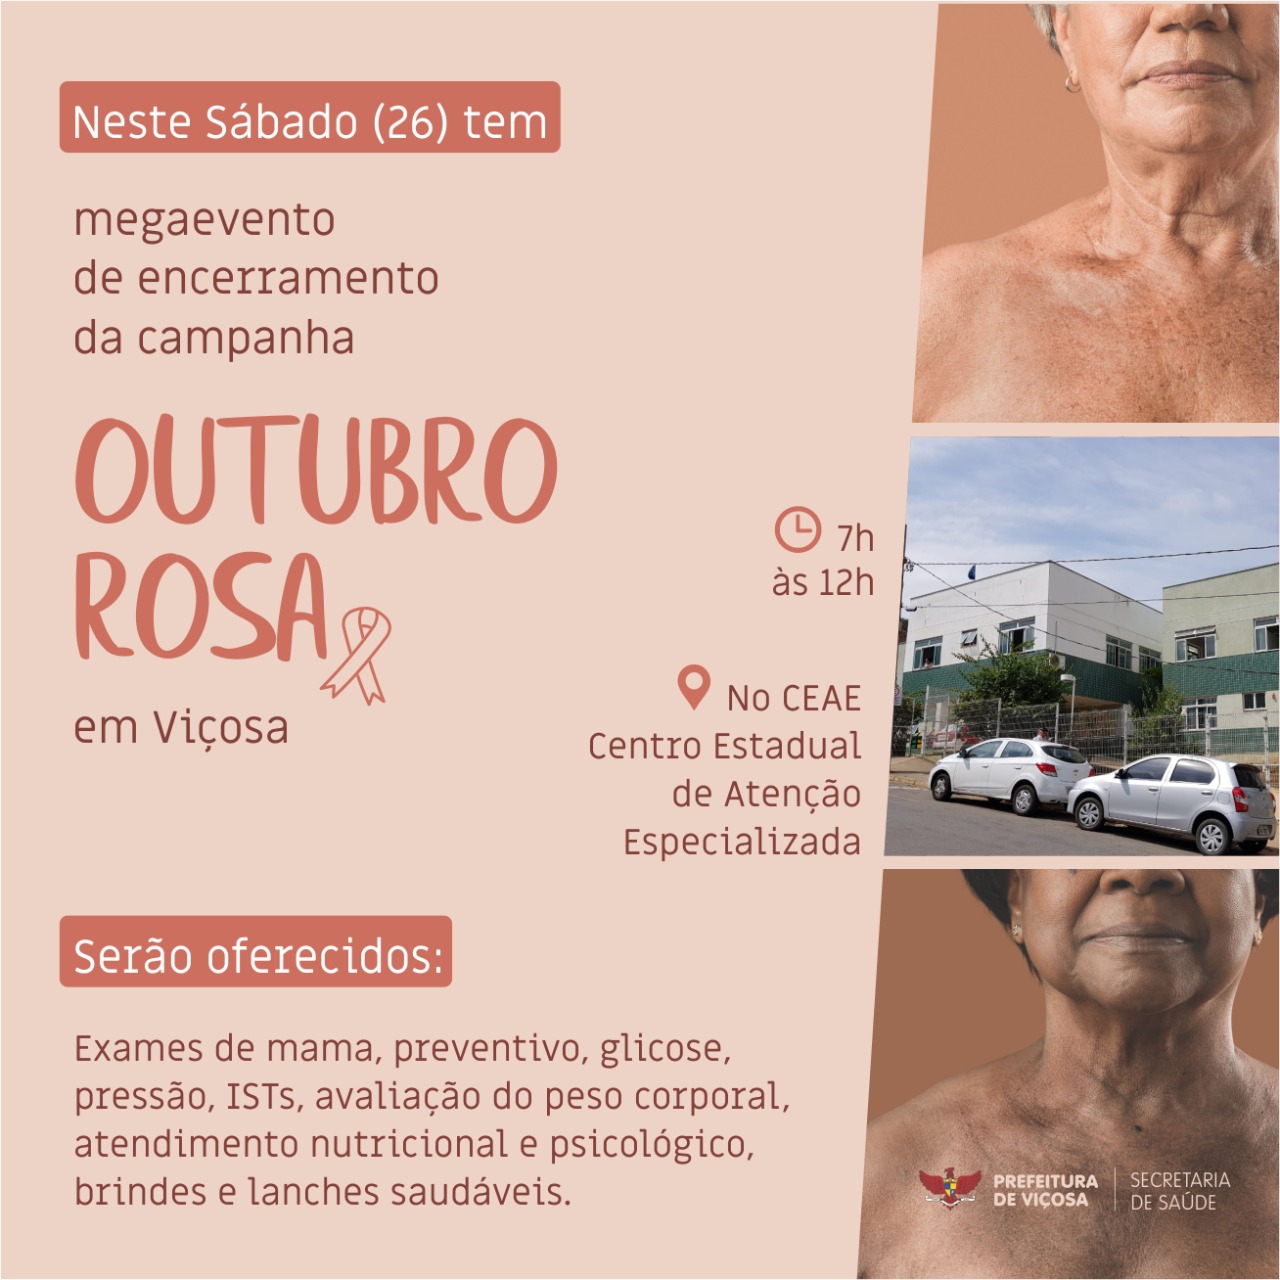 Participe do Megaevento de encerramento da campanha Outubro Rosa neste sábado em Viçosa